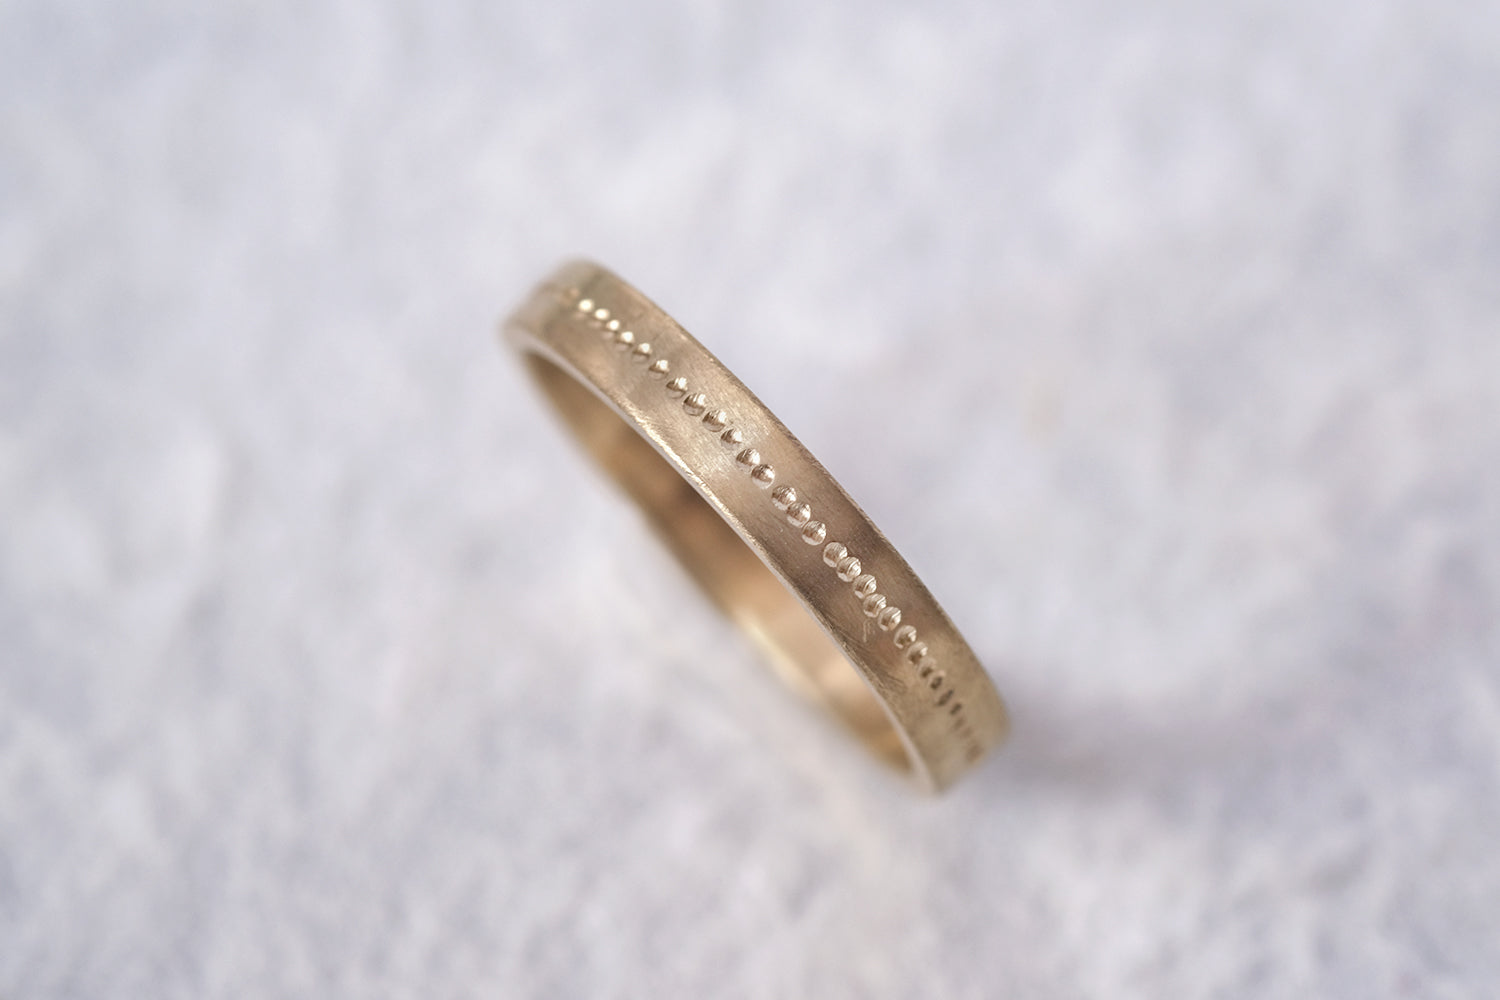 טבעת נישואין זהב נקודות